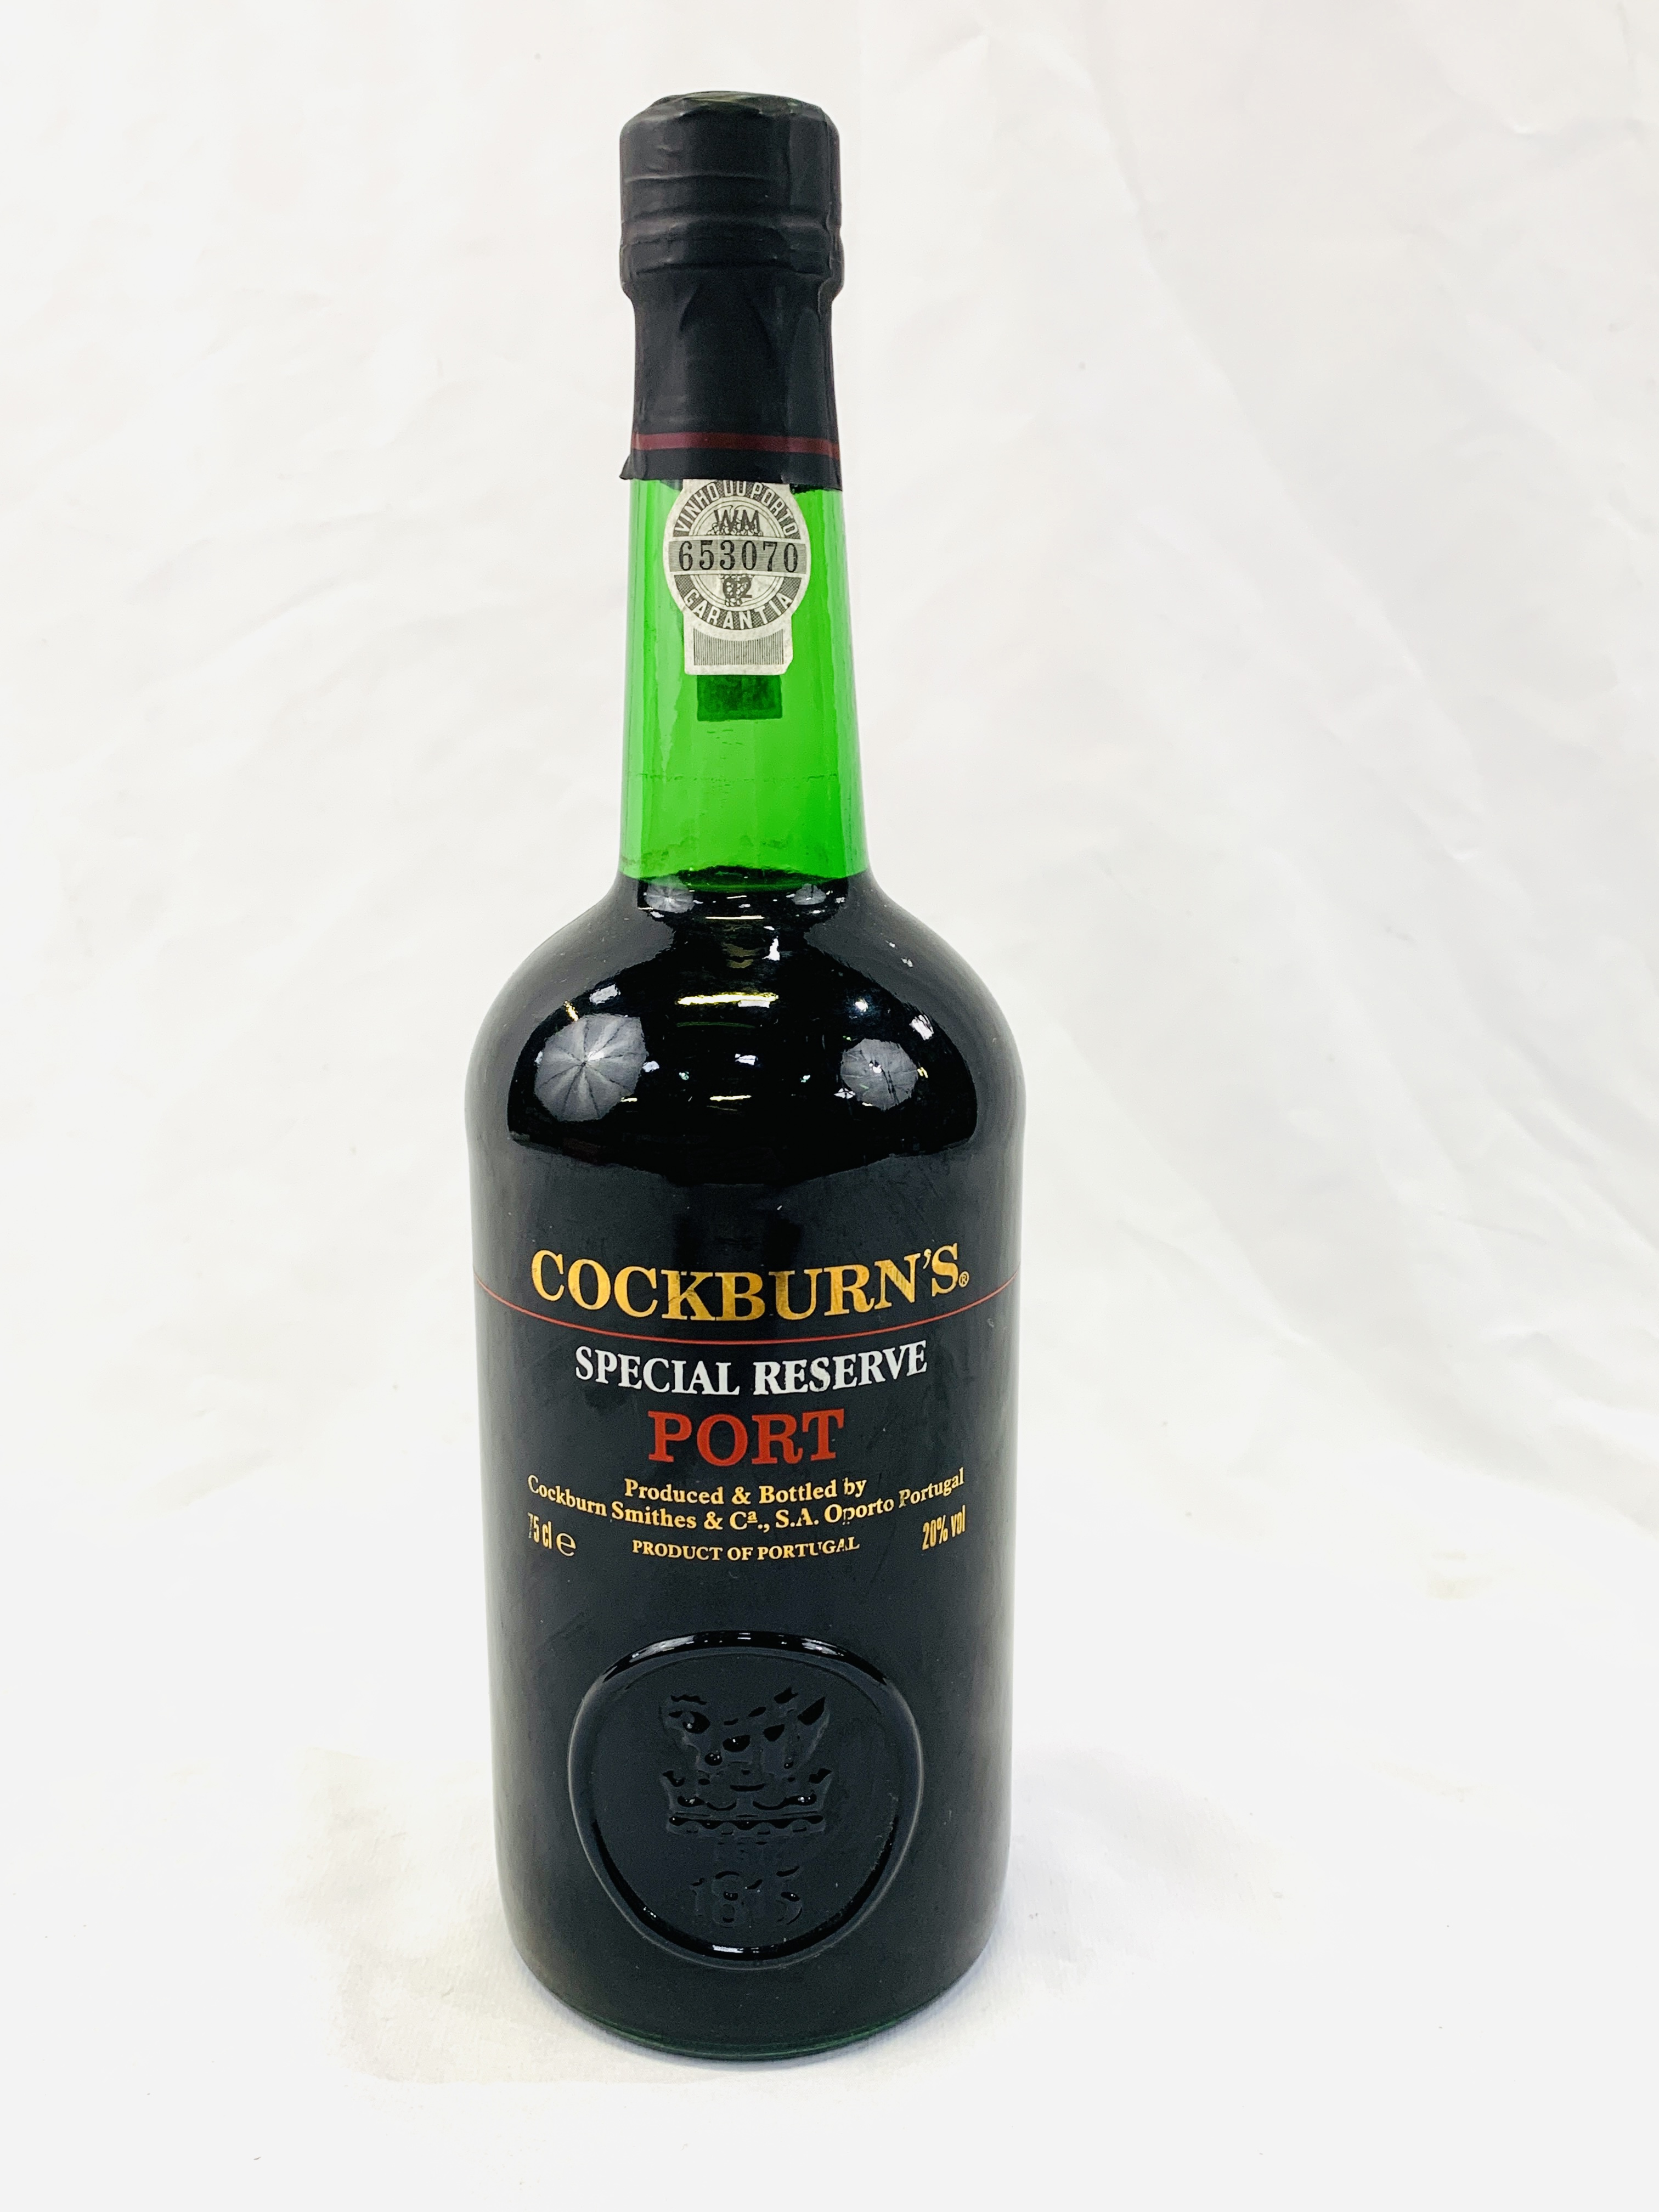 A bottle of Cockburns special reserve port